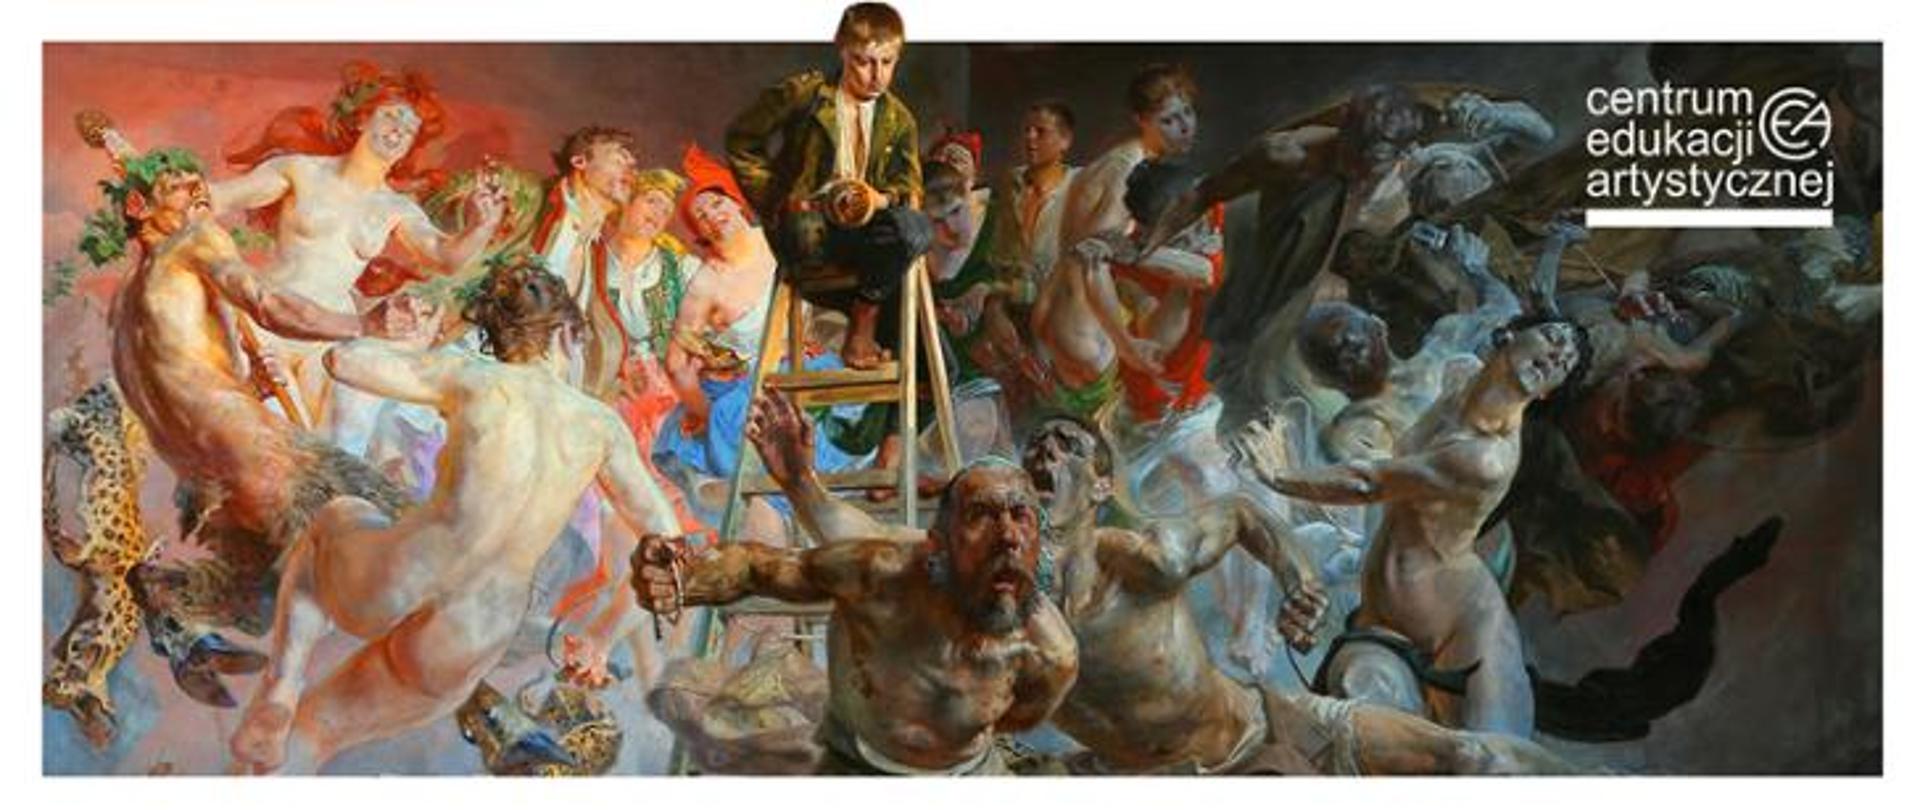 Fragment obrazu Jacka Malczewskiego Błędne Koło; na nim dynamiczna kompozycja postaci otaczających drabinę, na której siedzi chłopiec. W prawym górnym rogu logotyp Centrum Edukacji Artystycznej 